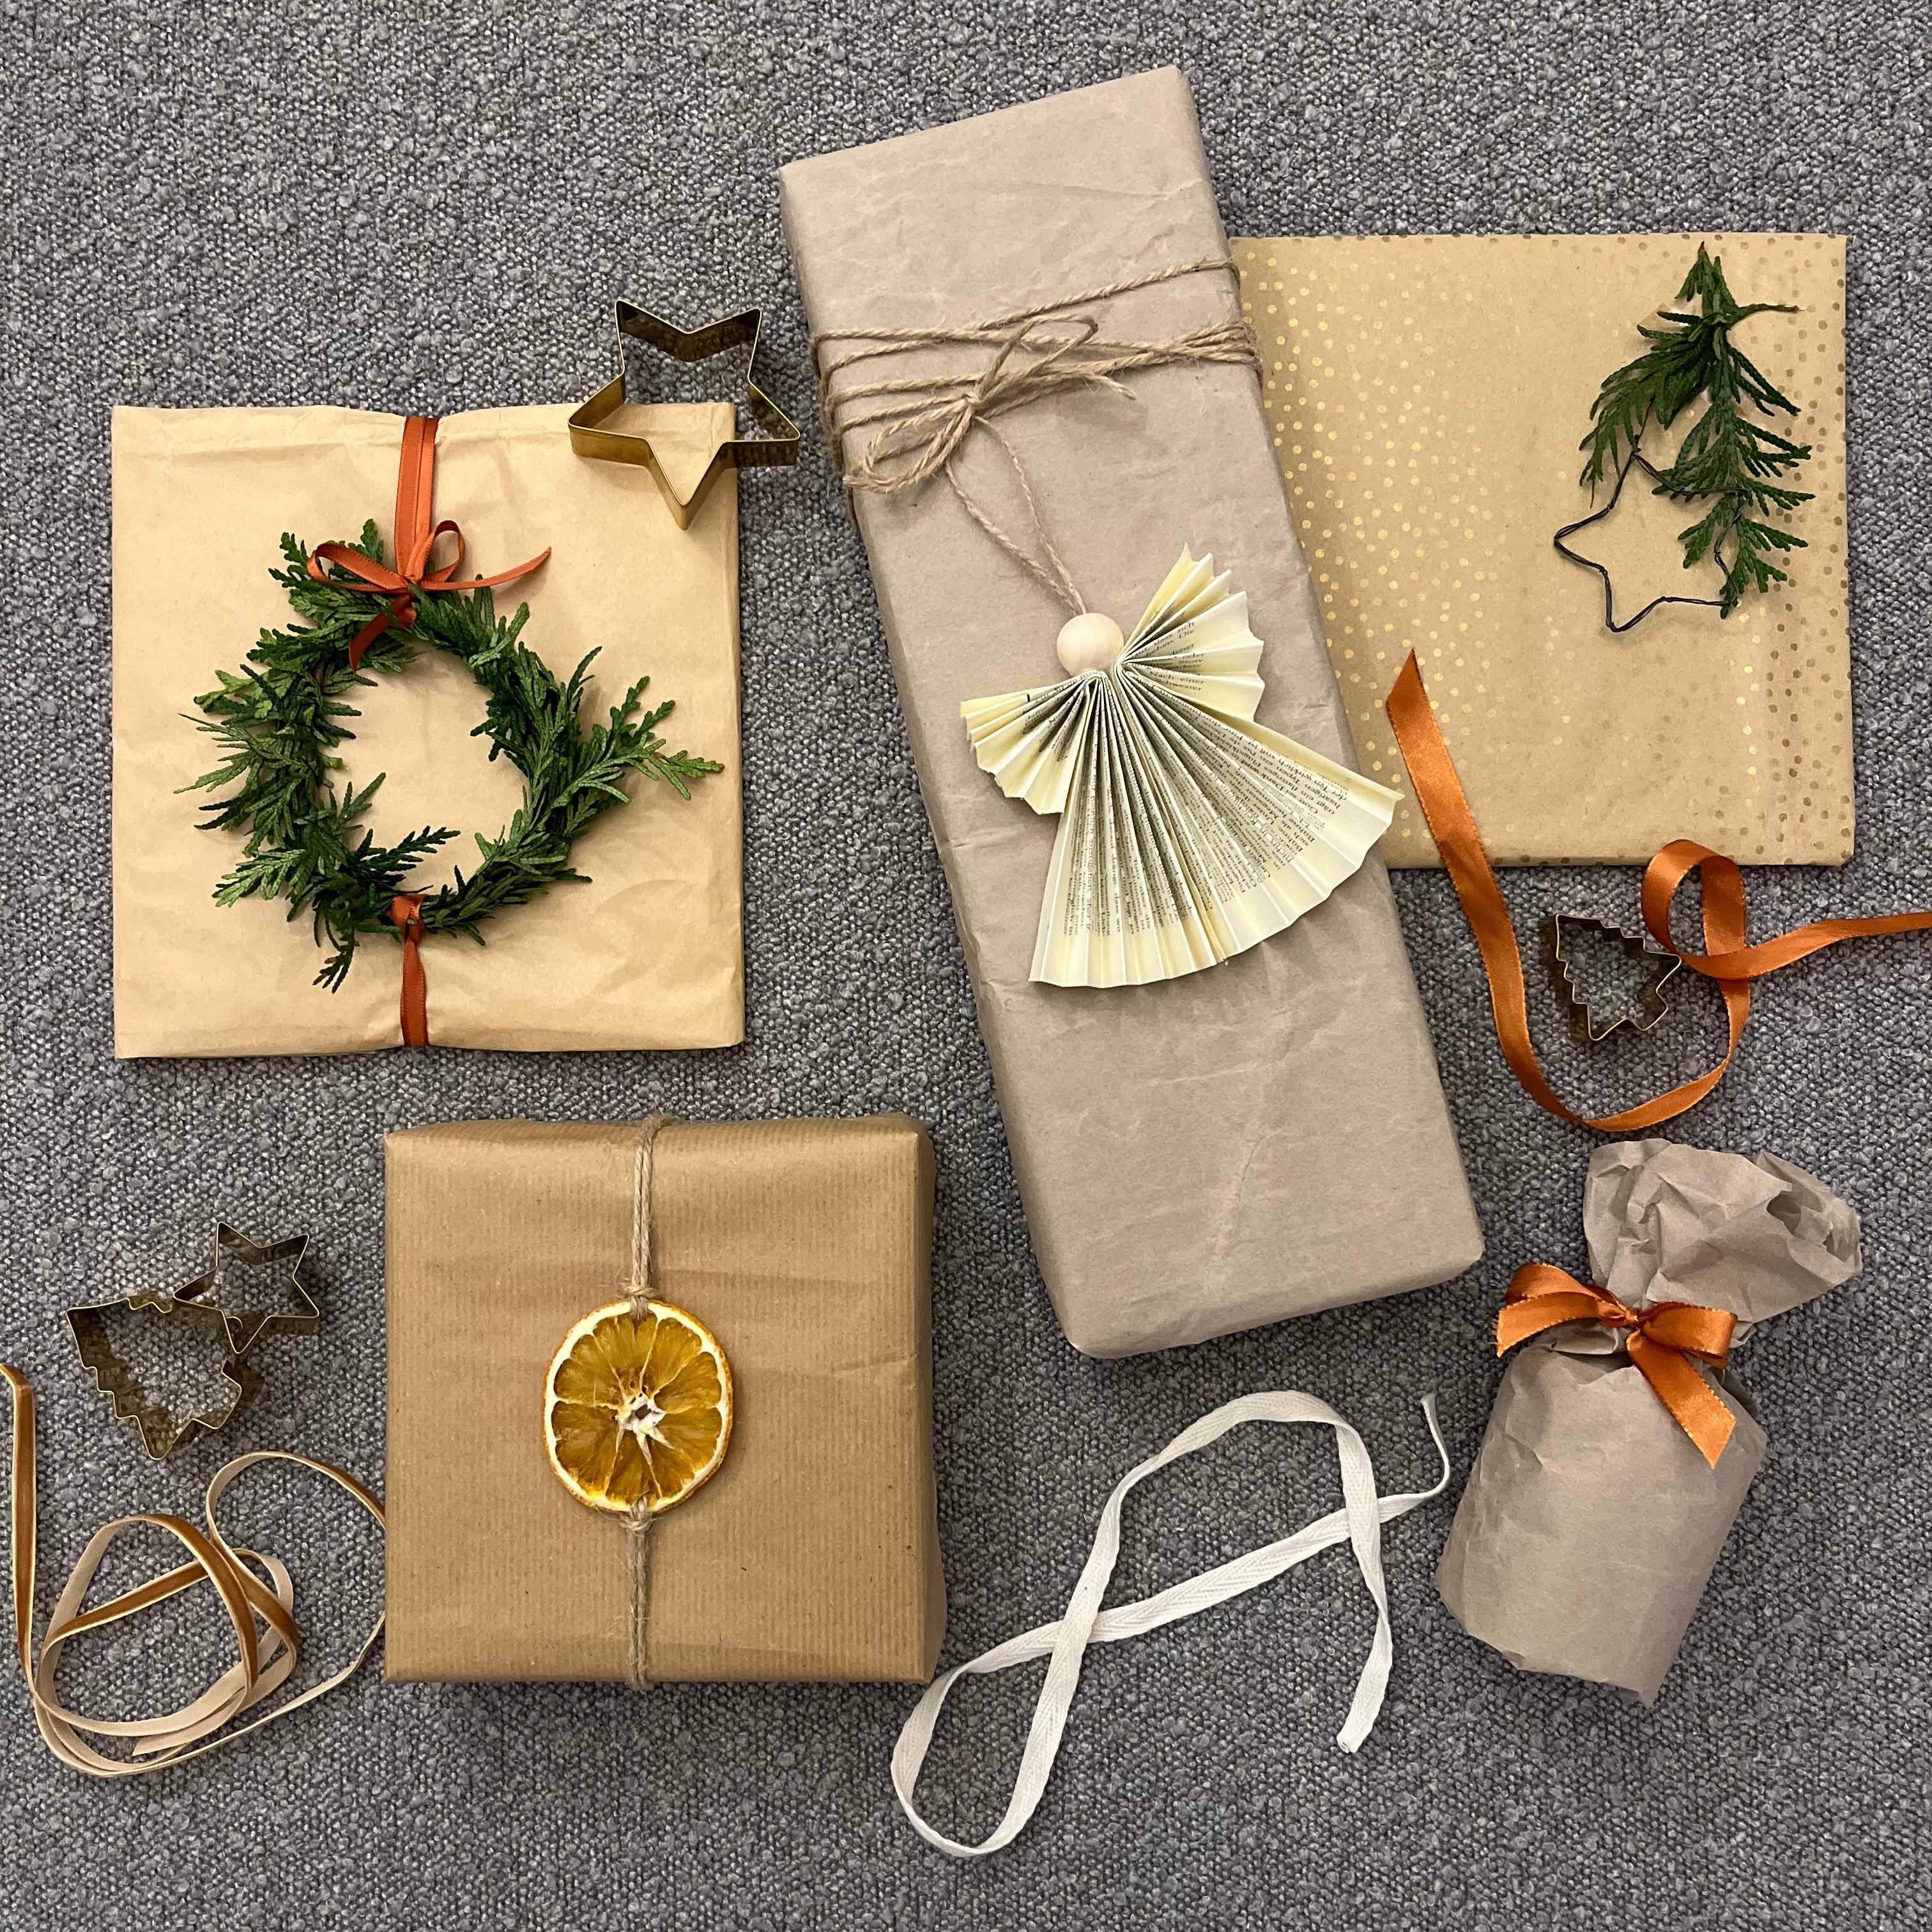 Geschenke verpacken 🩶 Wie weit bist du? #weihnachtsgeschenke #verpackungen #christmaswrapping #diy #geschenkepacken #weihnachten #natürlich #natrualliving #